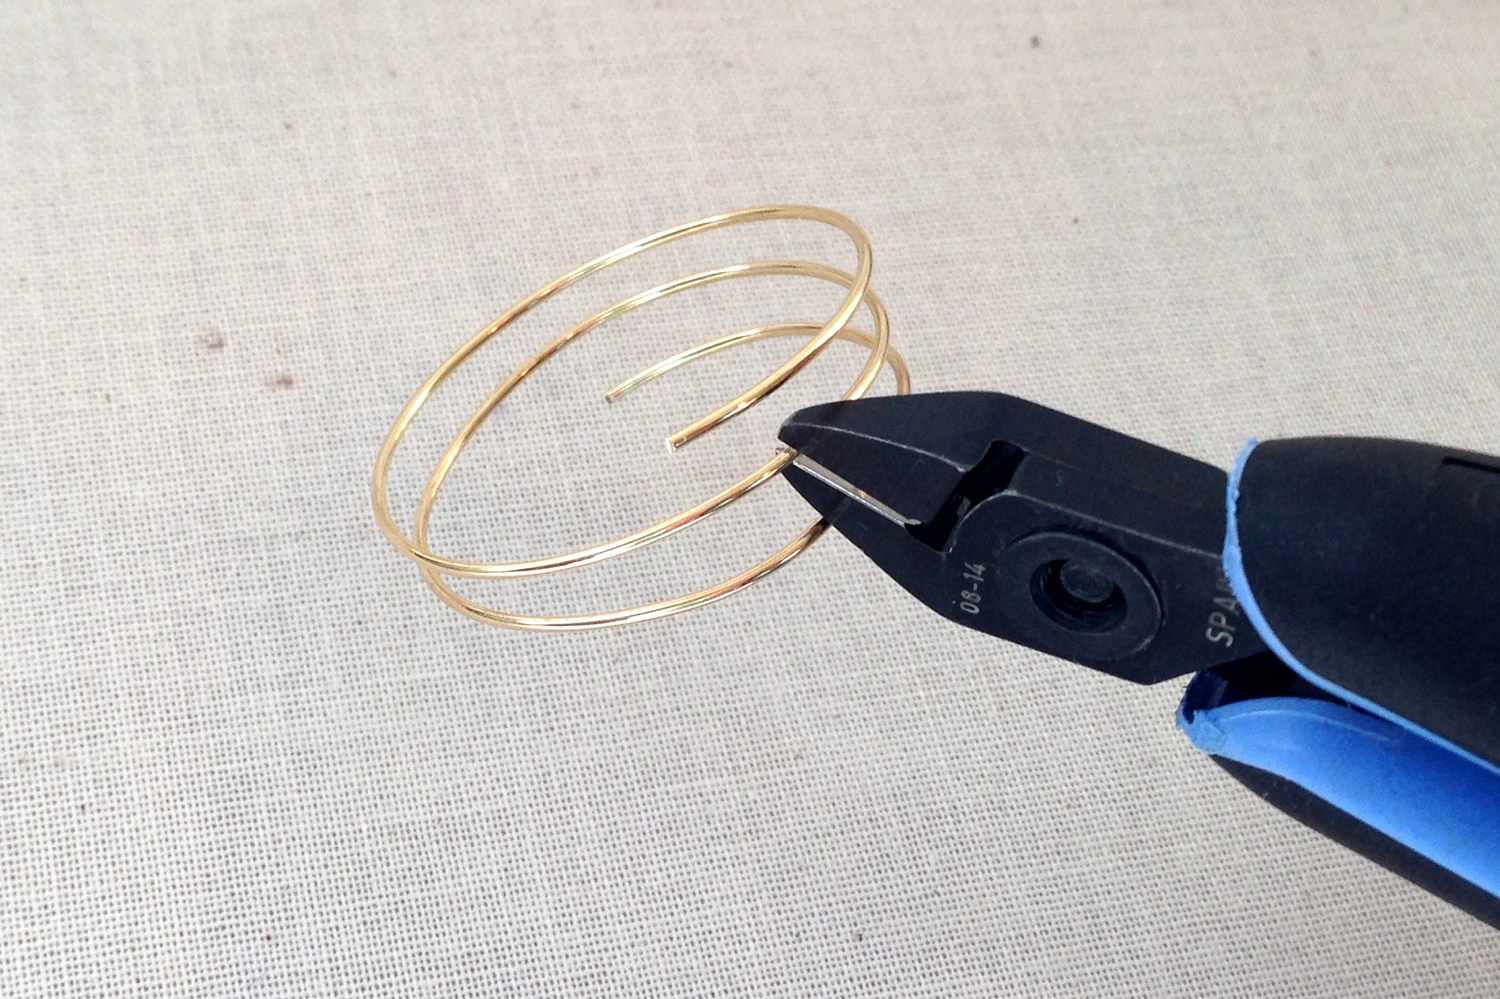 把铁丝环剪开做成两个单独的环